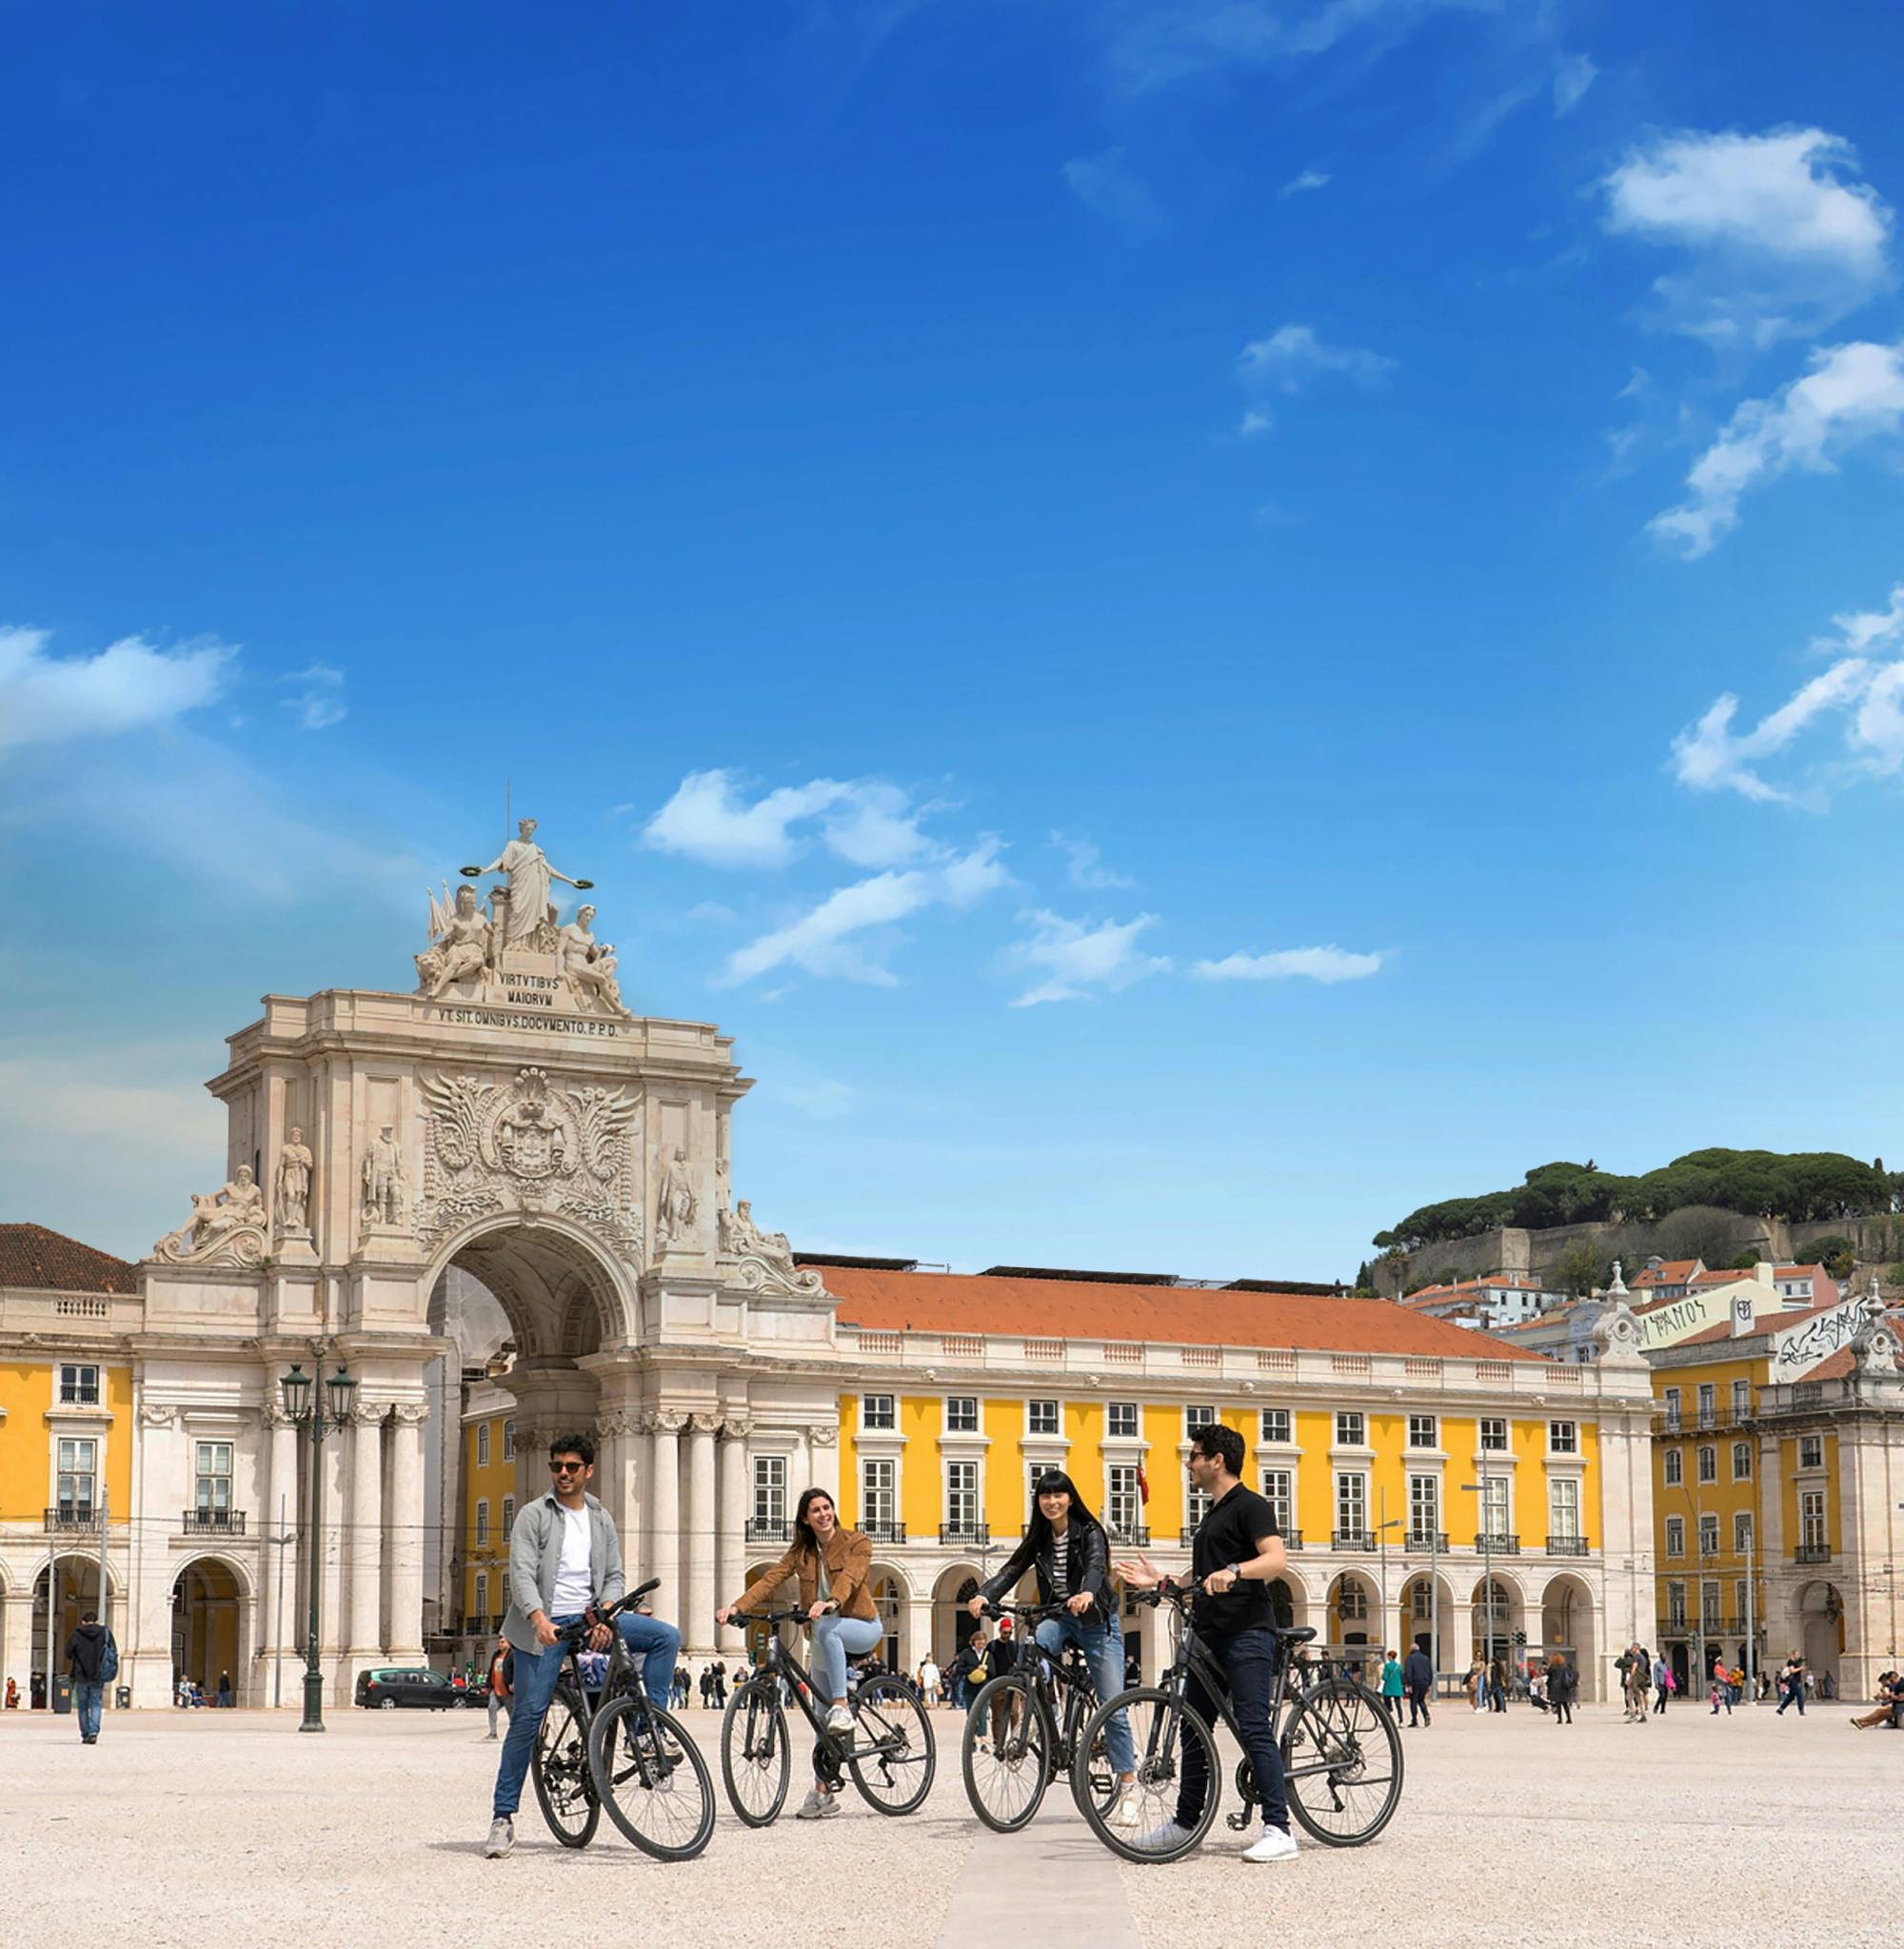 Passeio ativo por Lisboa com passeio de barco, passeio de bicicleta e caminhada